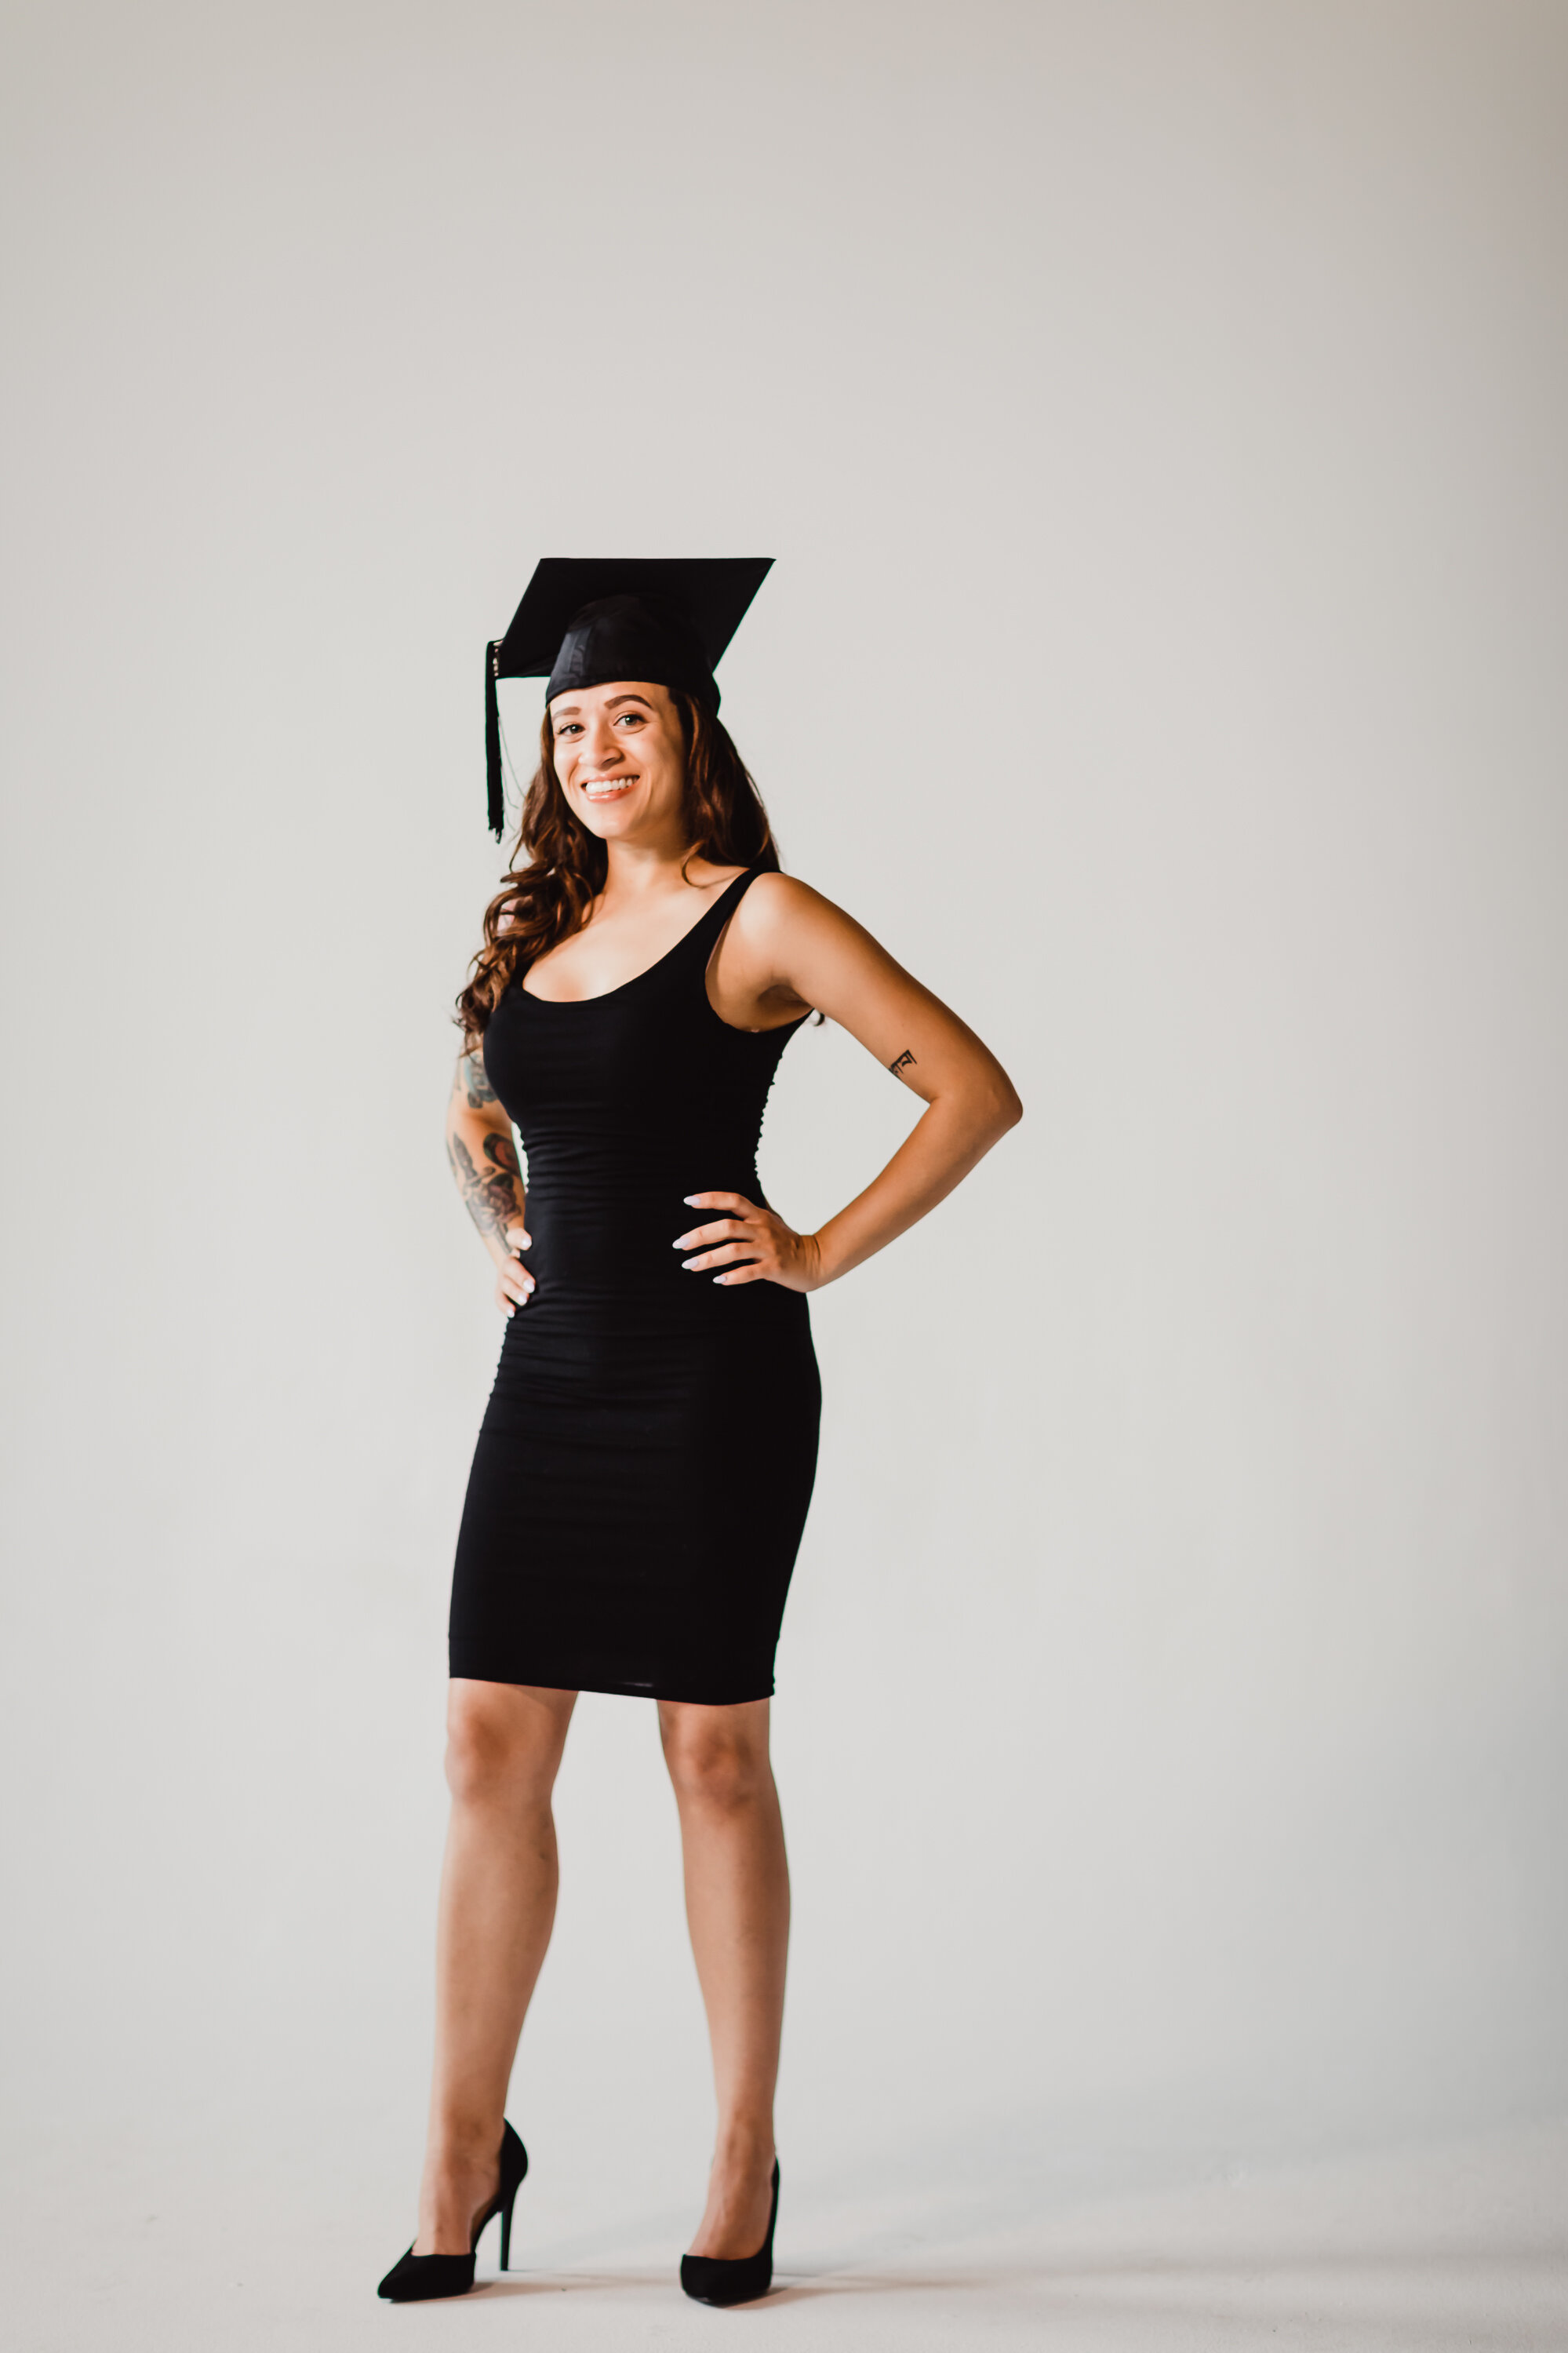 Gianna Keiko Atlanta Lifestyle Photographer_graduation portrait-30.jpg